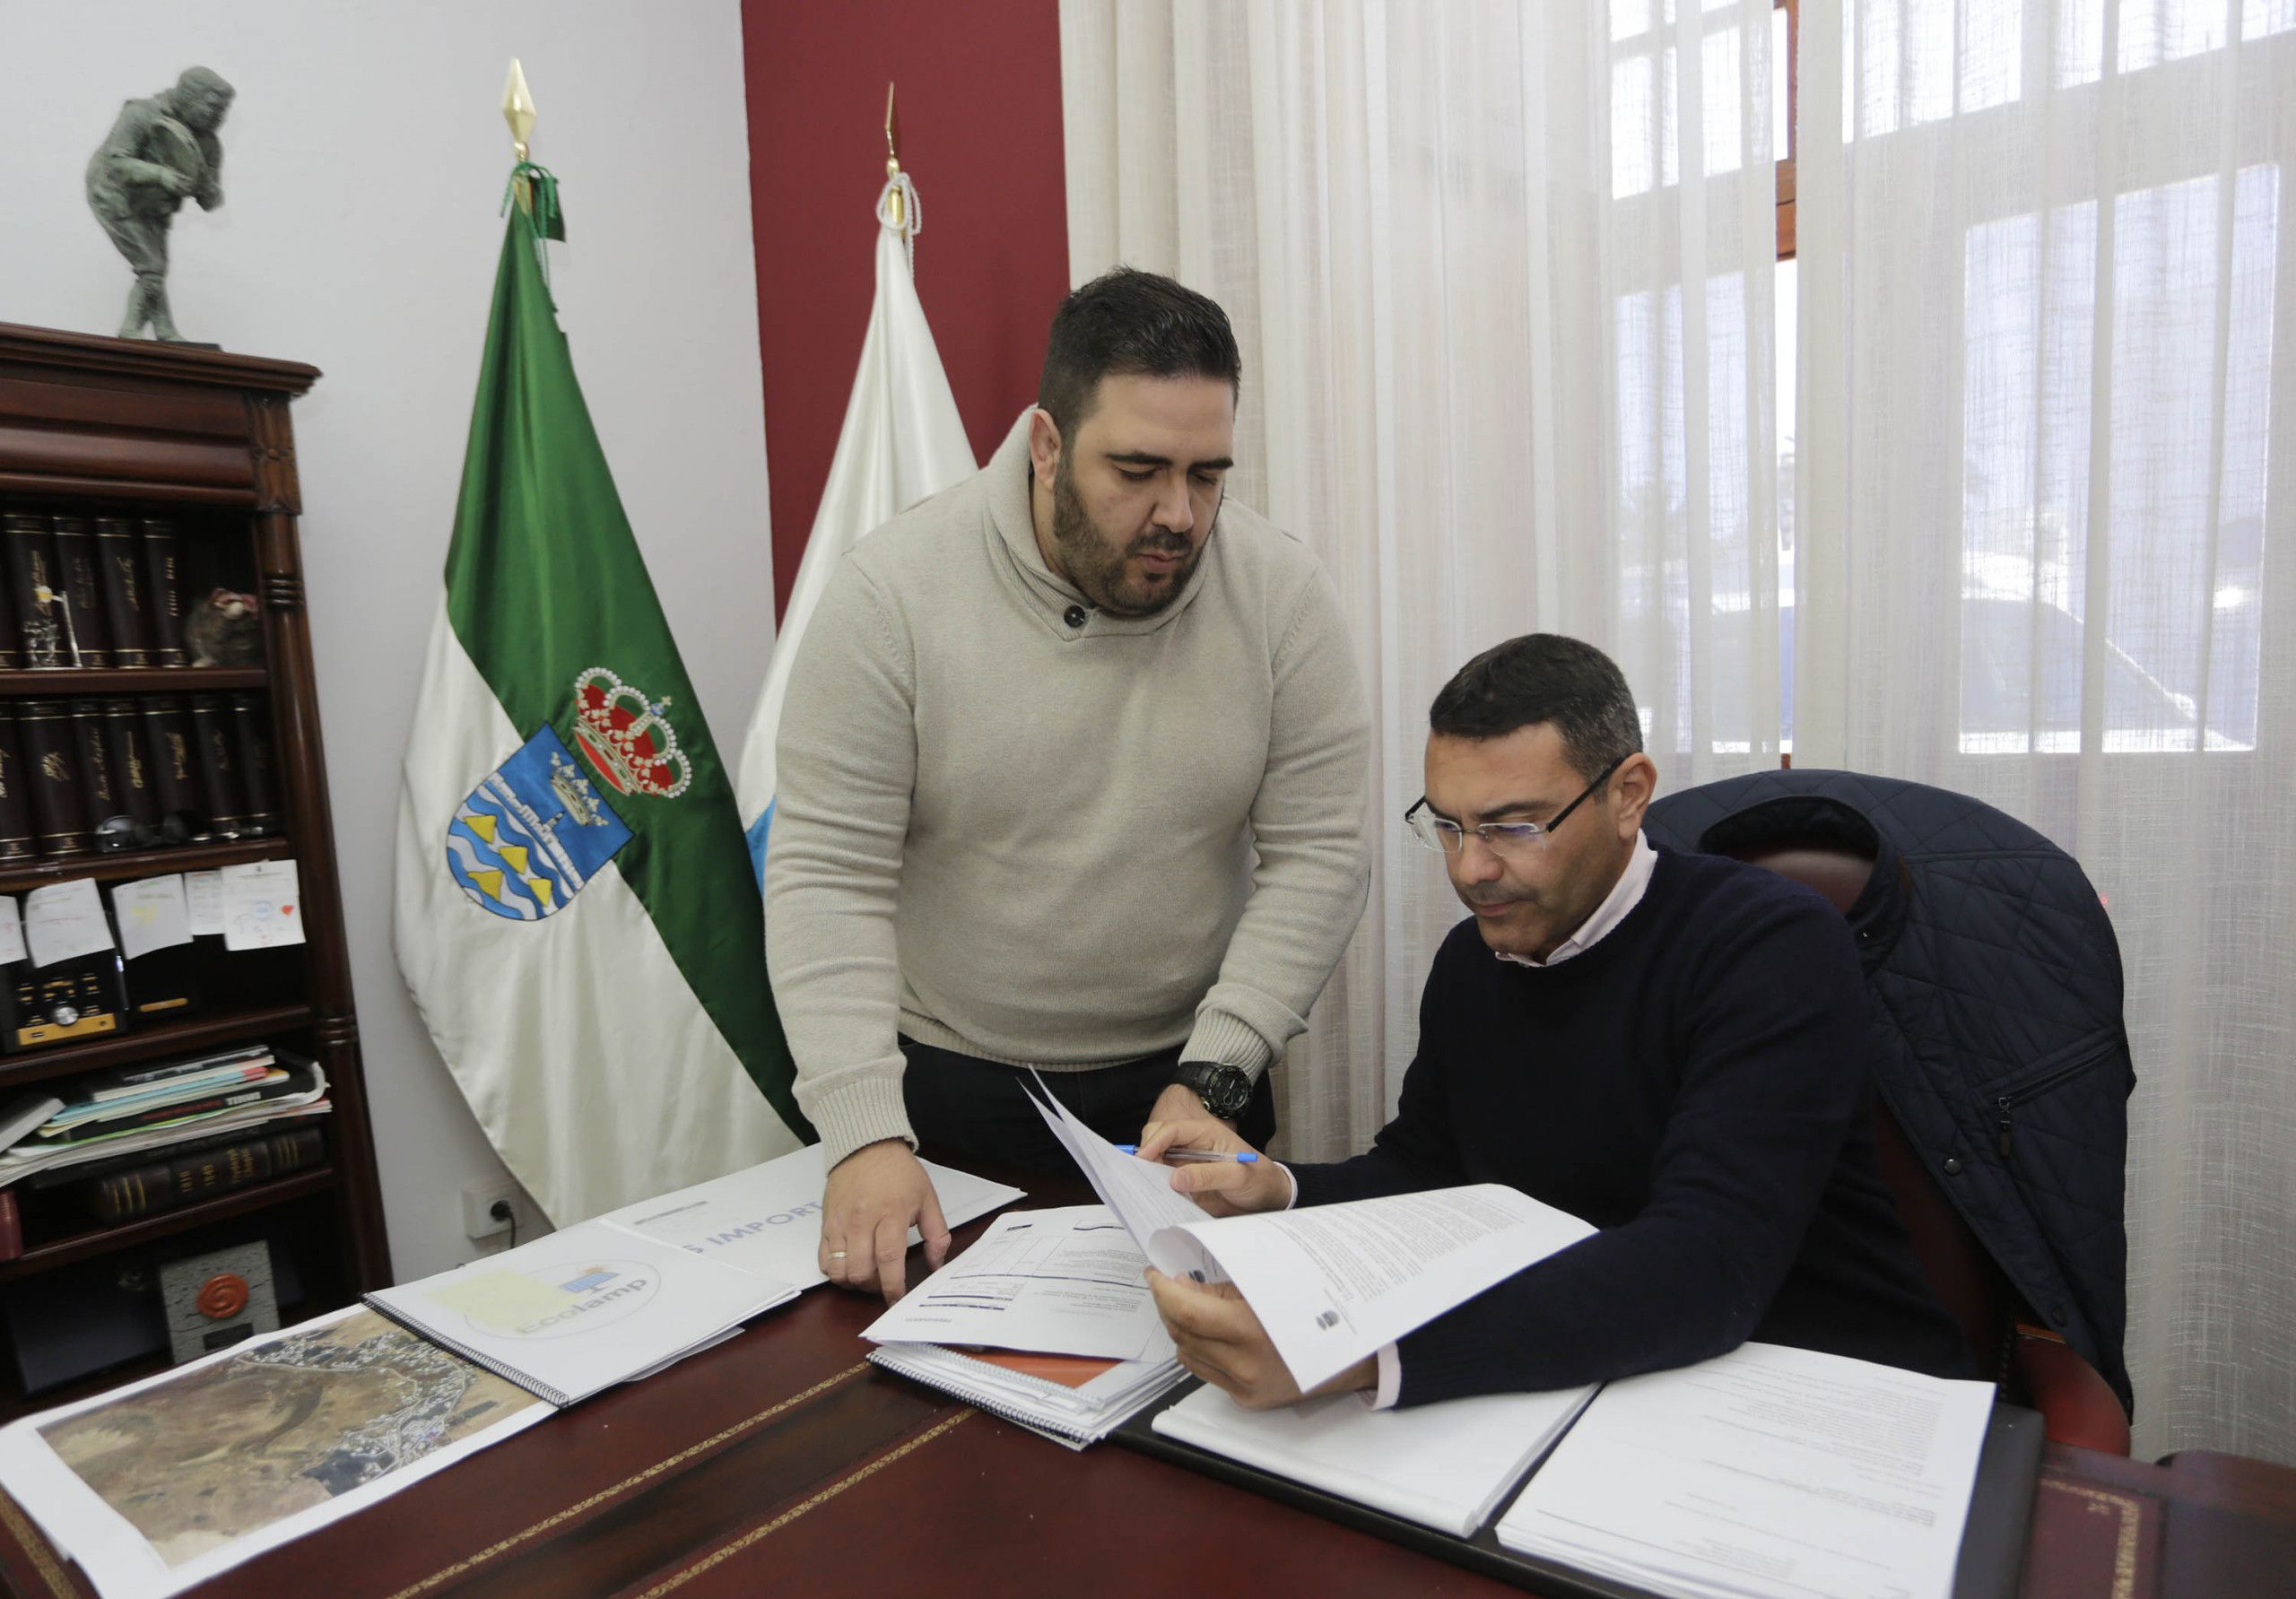 El alcalde de Teguise, Oswaldo Betancort, y el concejal del área de Educación, Javier Díaz